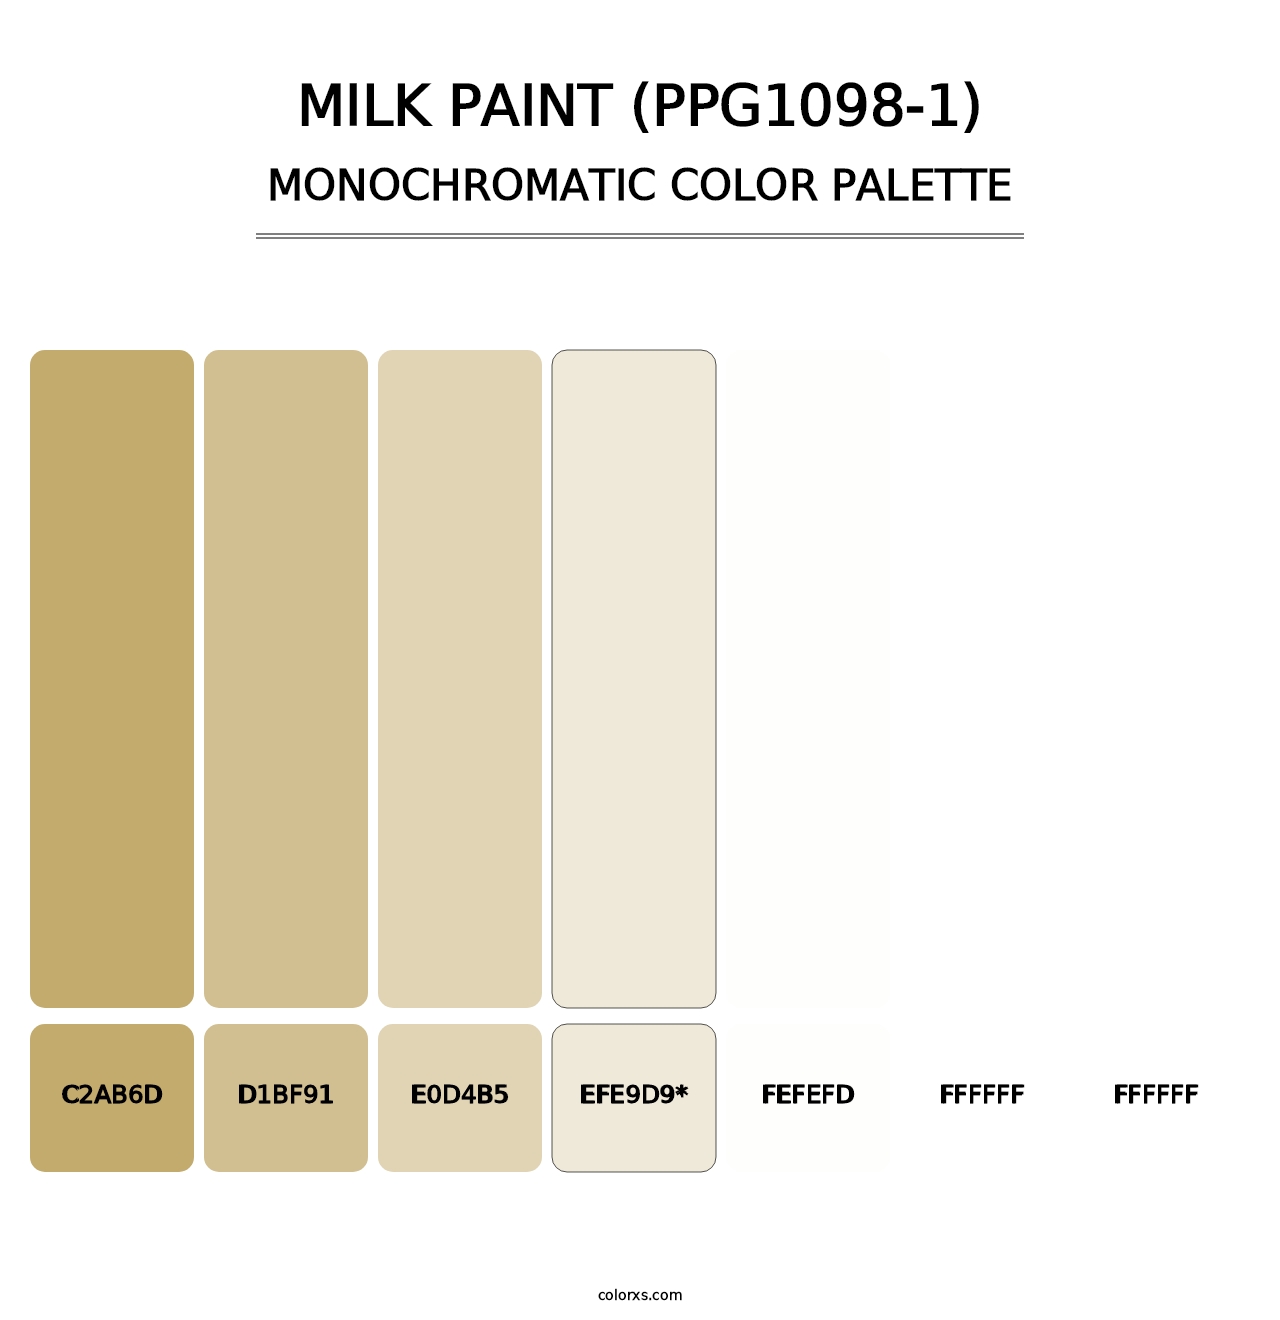 Milk Paint (PPG1098-1) - Monochromatic Color Palette